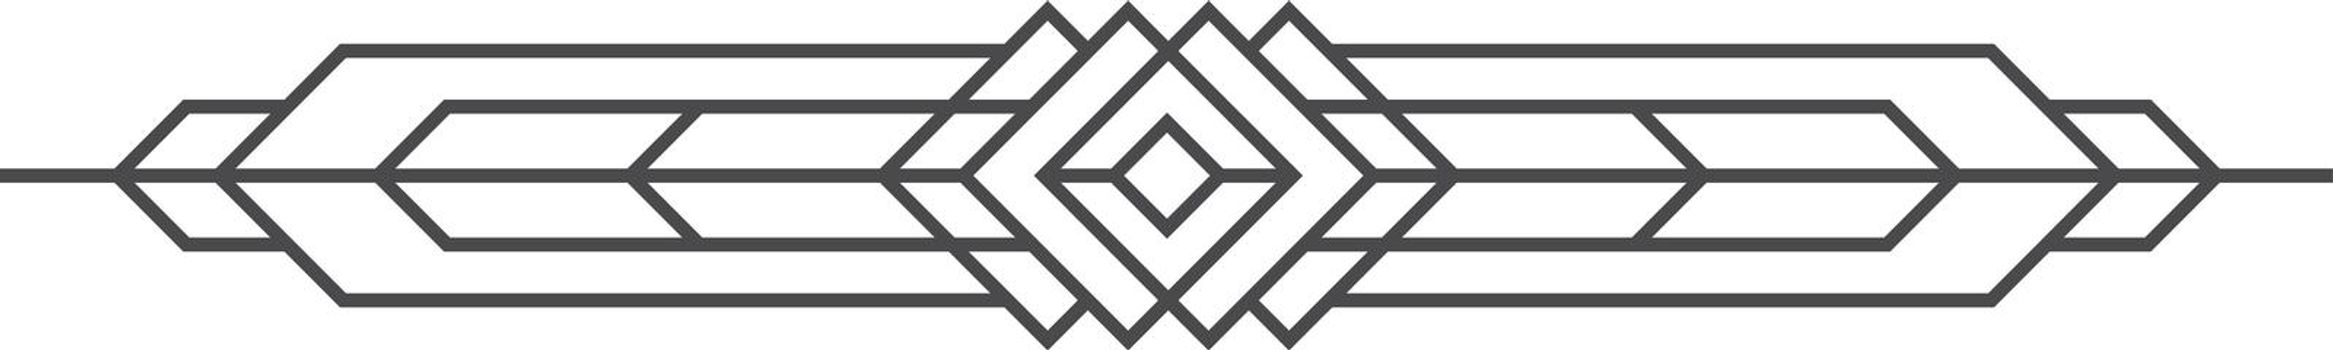 Ornament geometric header, filigree logo decor picture